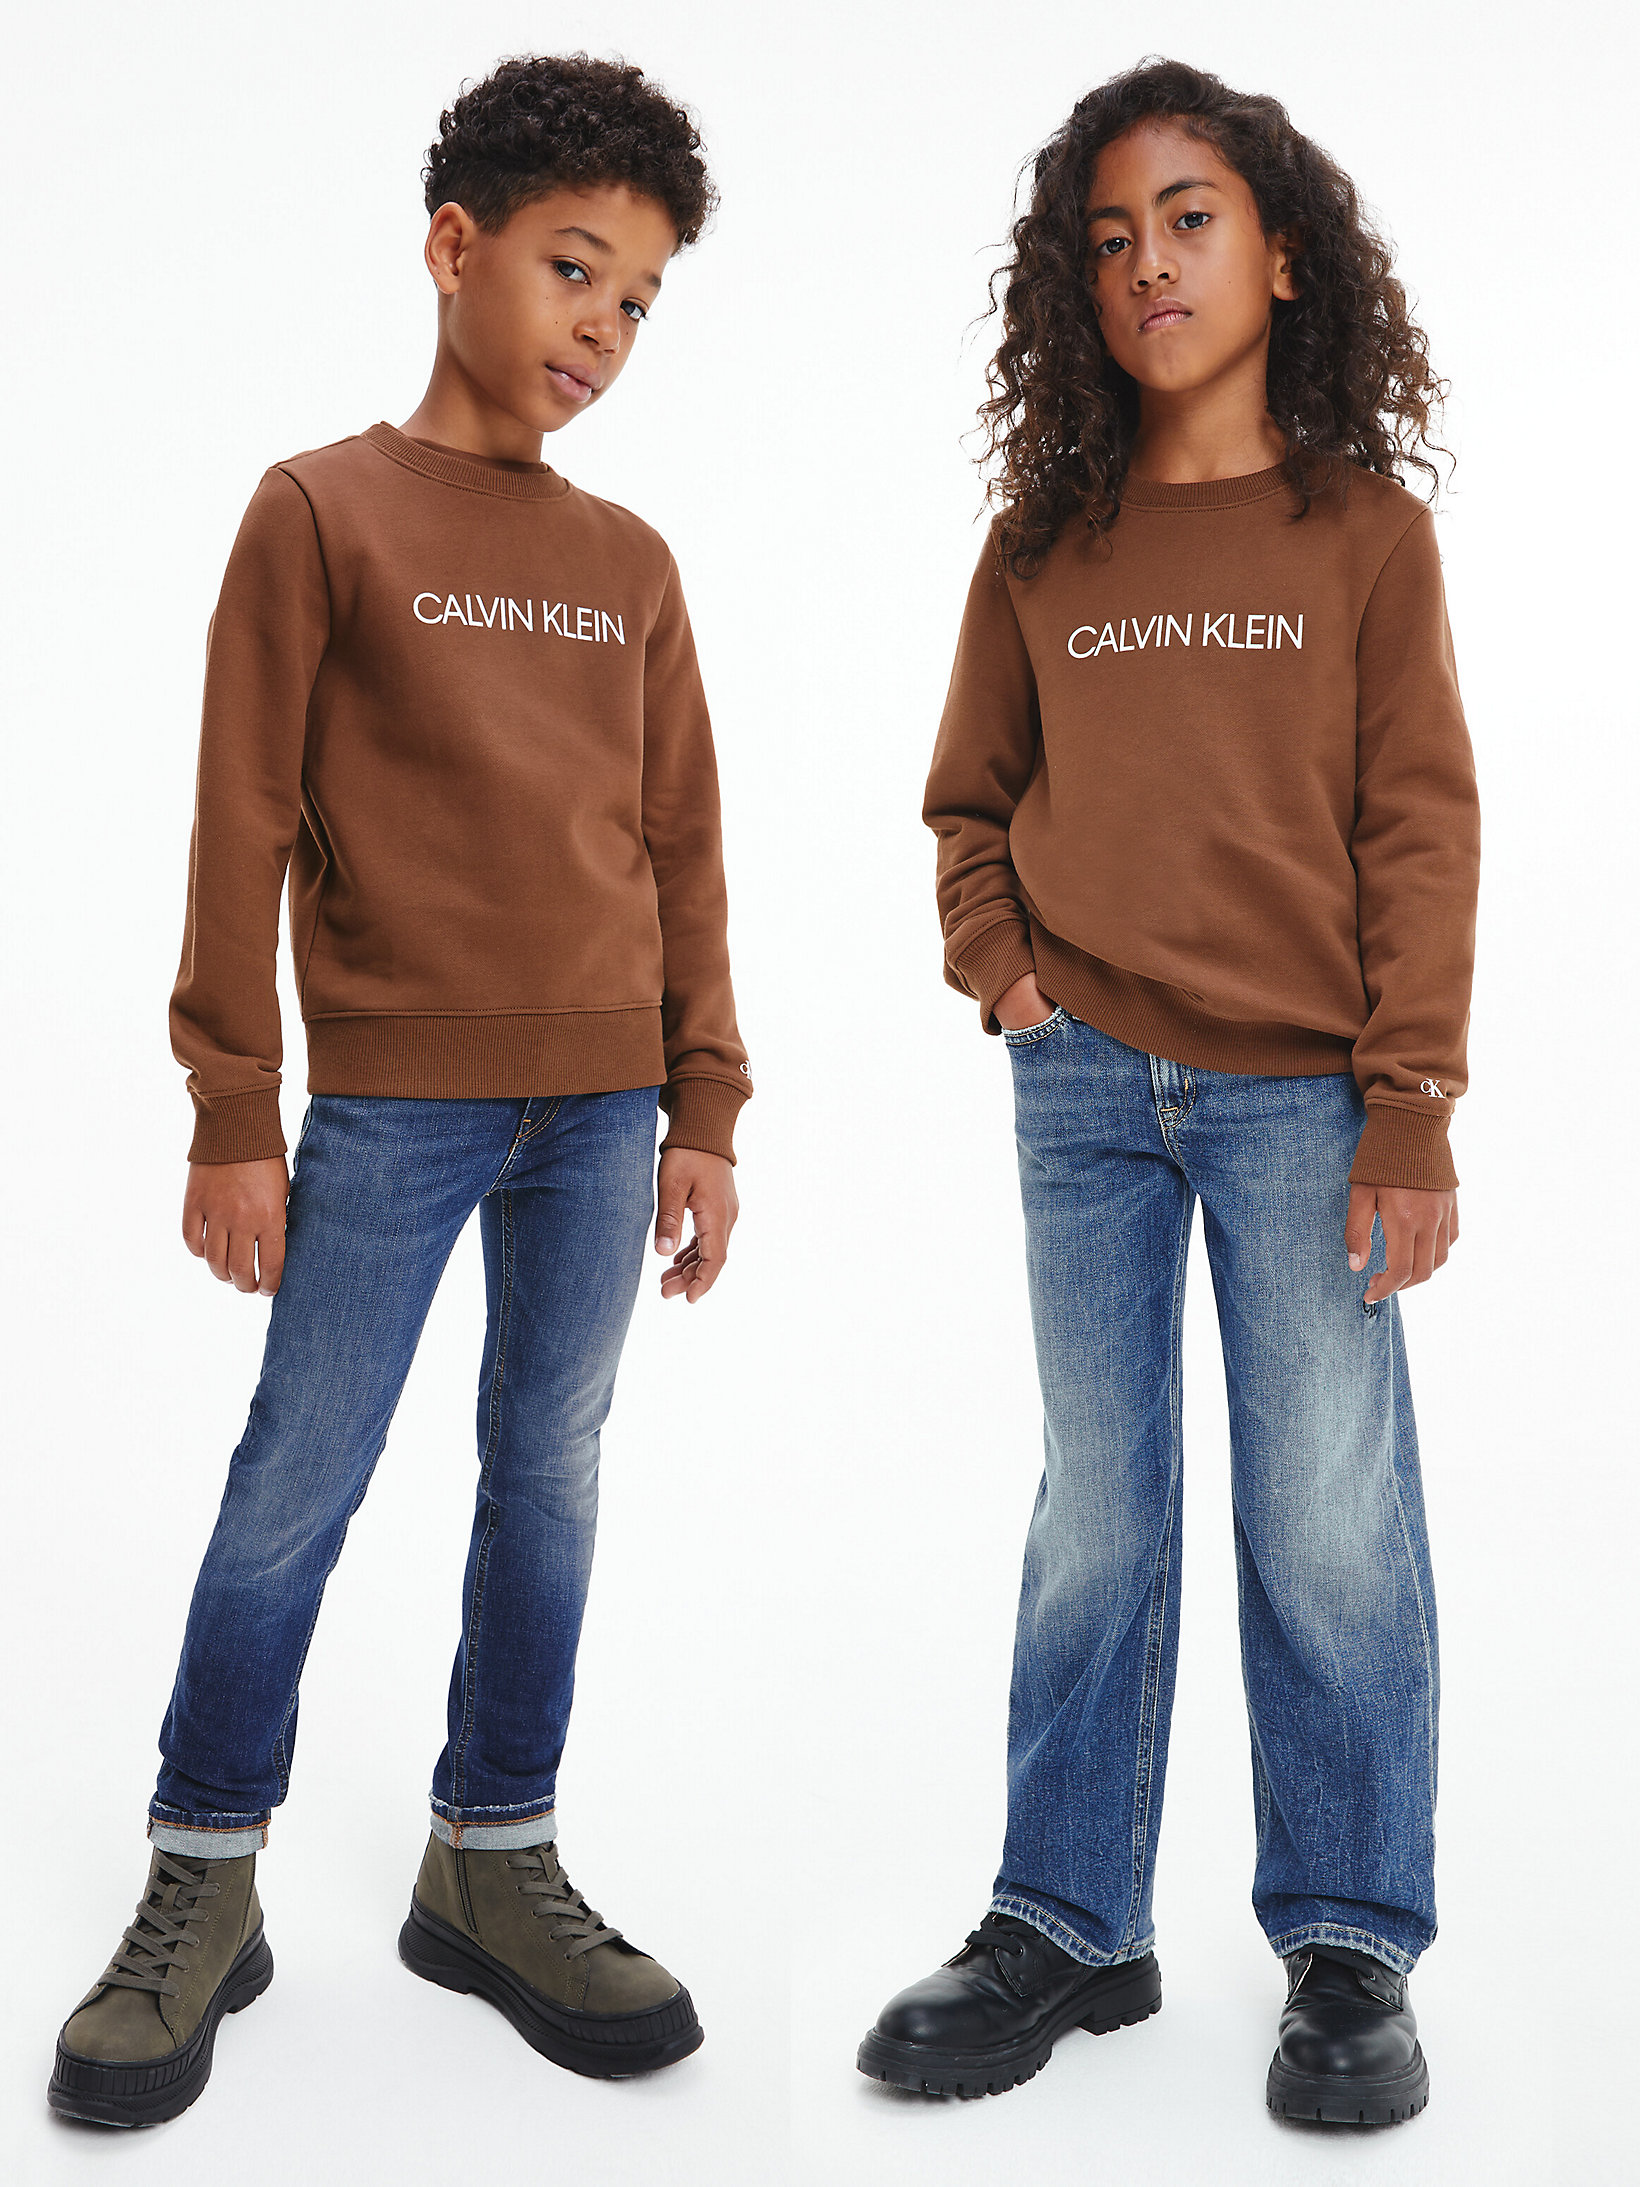 Milk Chocolate > Logo-Sweatshirt Unisex > undefined kids unisex - Calvin Klein